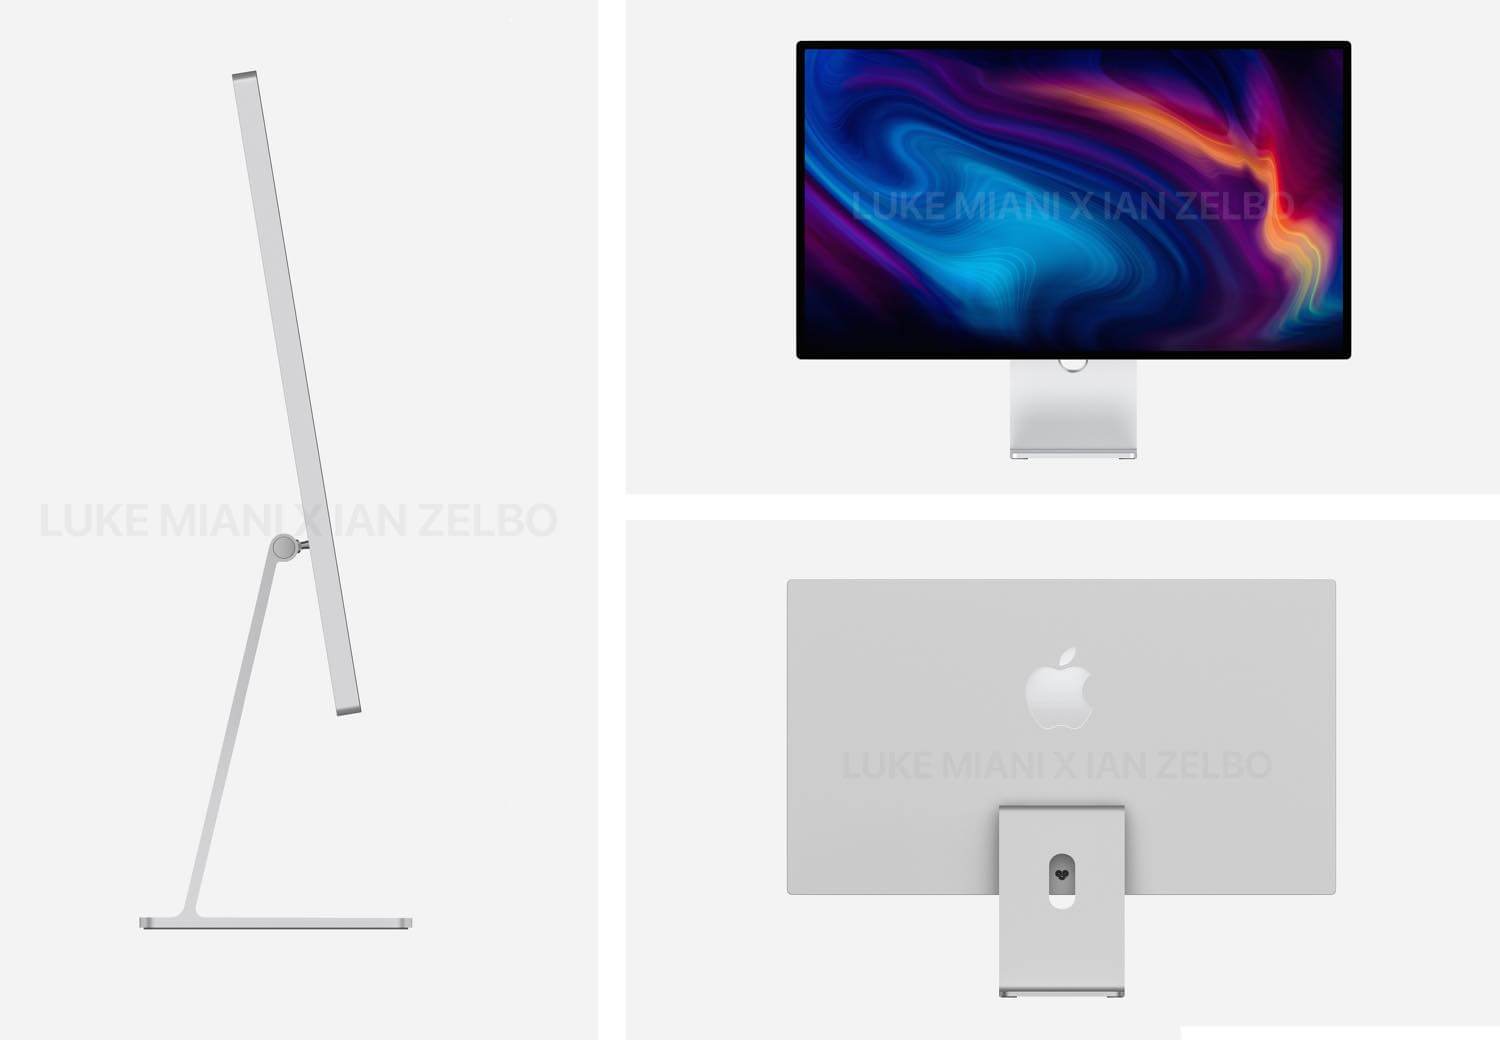 Appleが開発中と噂の｢Mac Studio｣と新型外部ディスプレイはこんな感じに?? − 3月8日のイベントで発表される可能性も